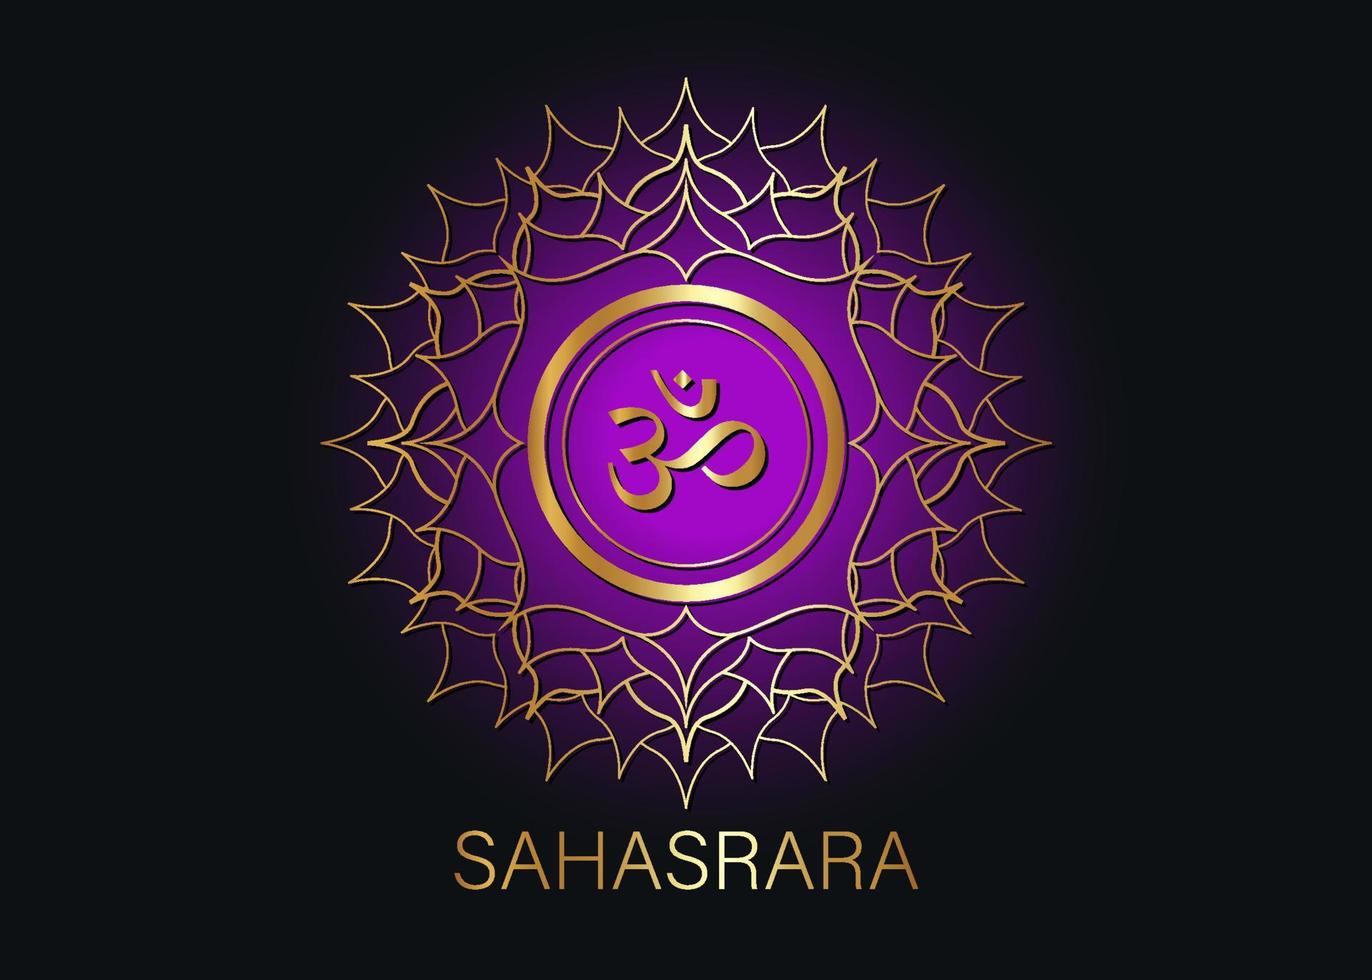 siebte chakra sahasrara logo vorlage. Kronen-Chakra-Symbol, lila goldene Sakralzeichen-Meditation, Yoga rundes Mandala-Symbol. Goldsymbol om in der Mitte, Vektor auf schwarzem Hintergrund isoliert